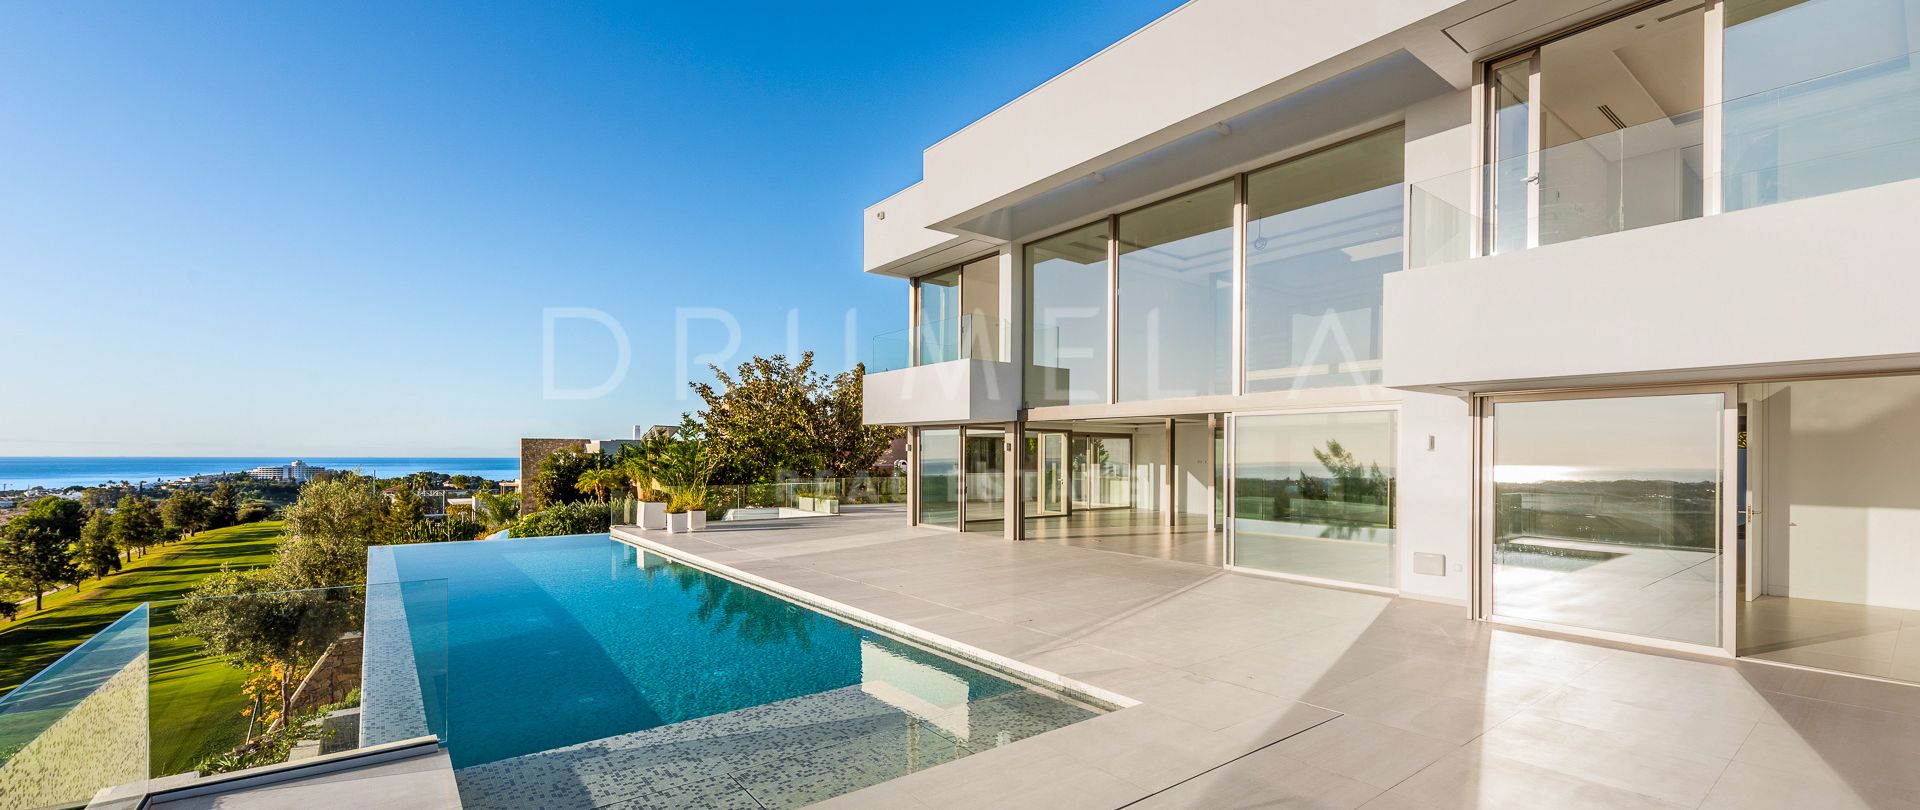 Villa moderna a estrenar con impresionantes vistas panorámicas al mar, La Alqueria, Benahavis